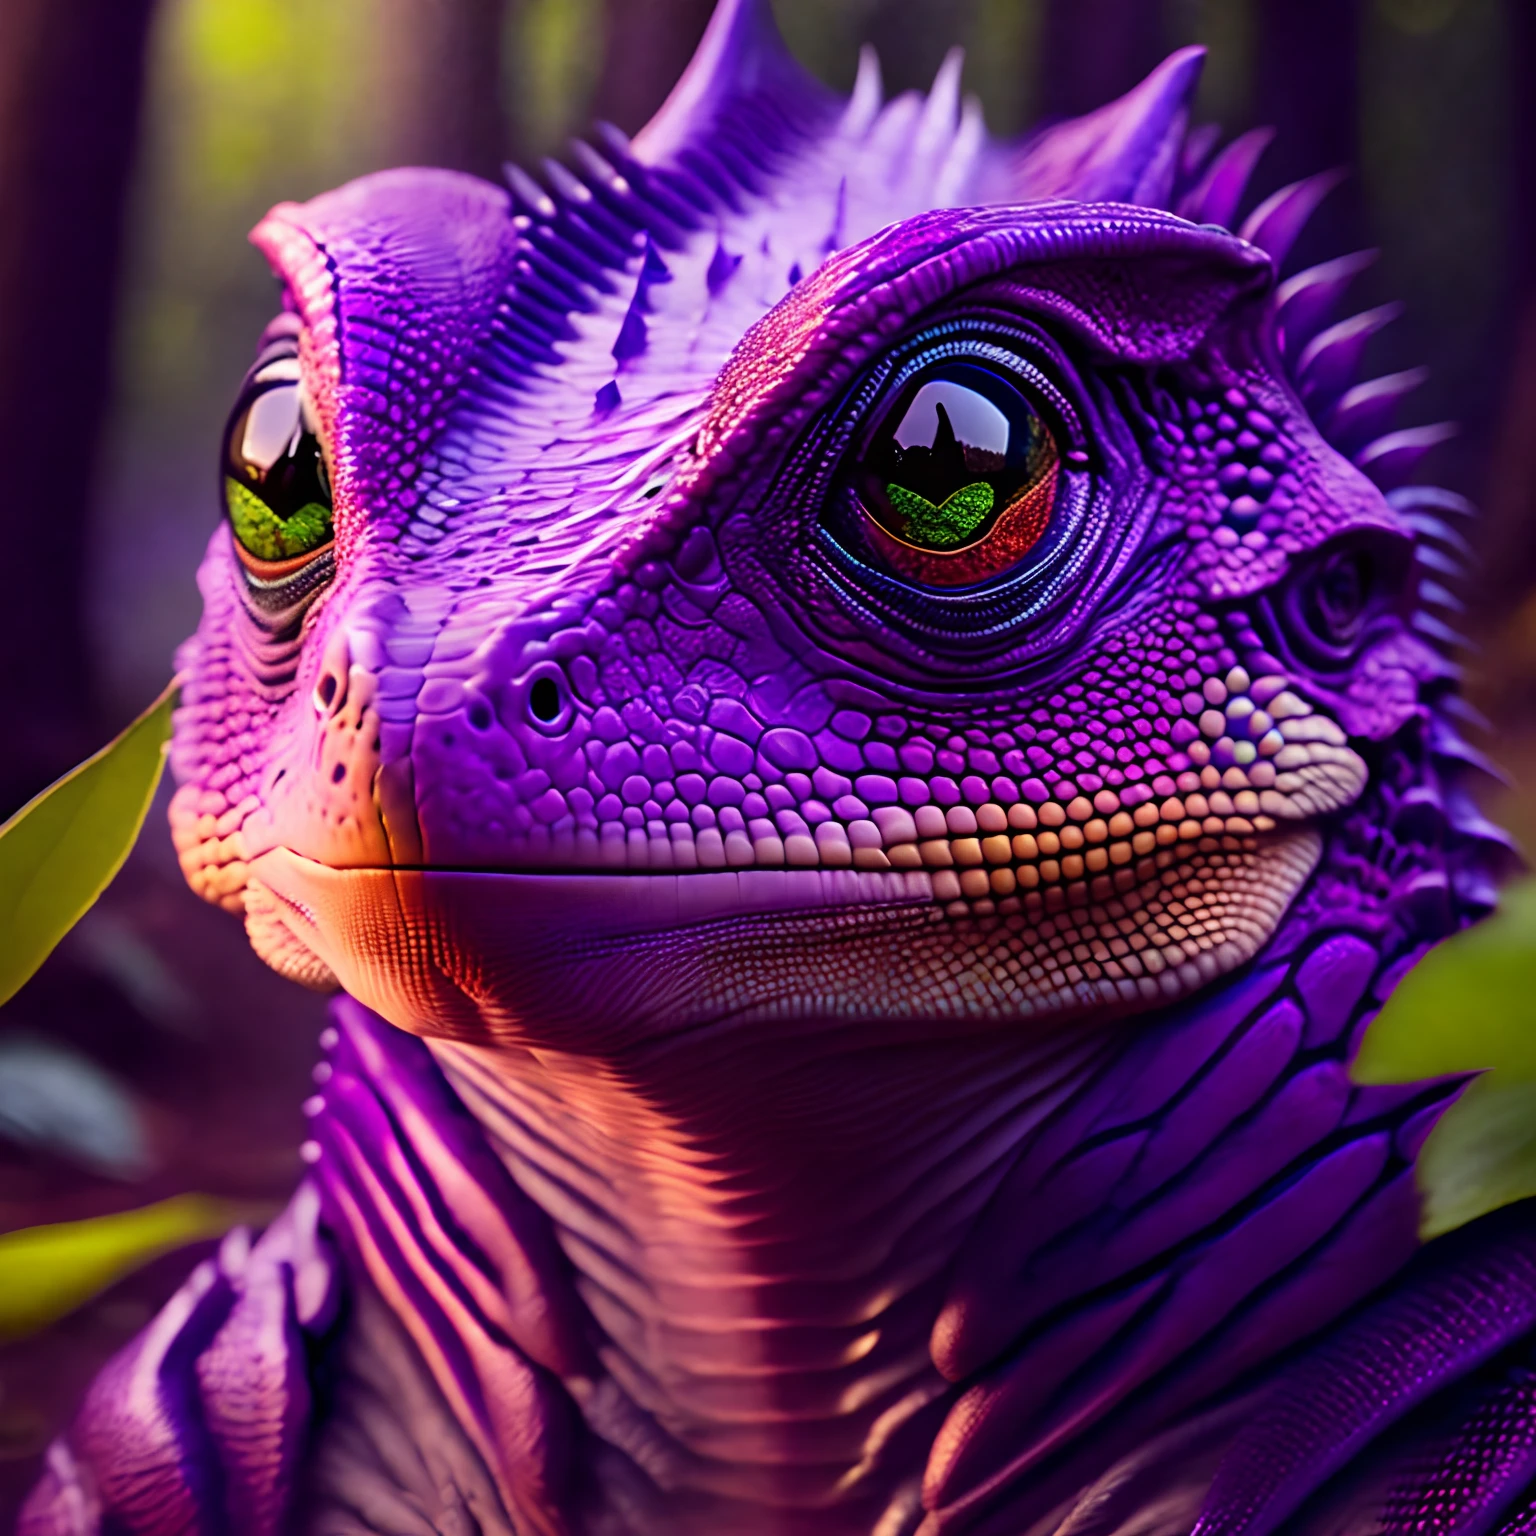 (((Obra de arte))) foto de um híbrido humano-lagarto, ameaçadoramente, olhos de lagarto, pele roxa, escamas no corpo, grandes garras, floresta pantanosa, Alto detalhe, 8K, ultra realistic